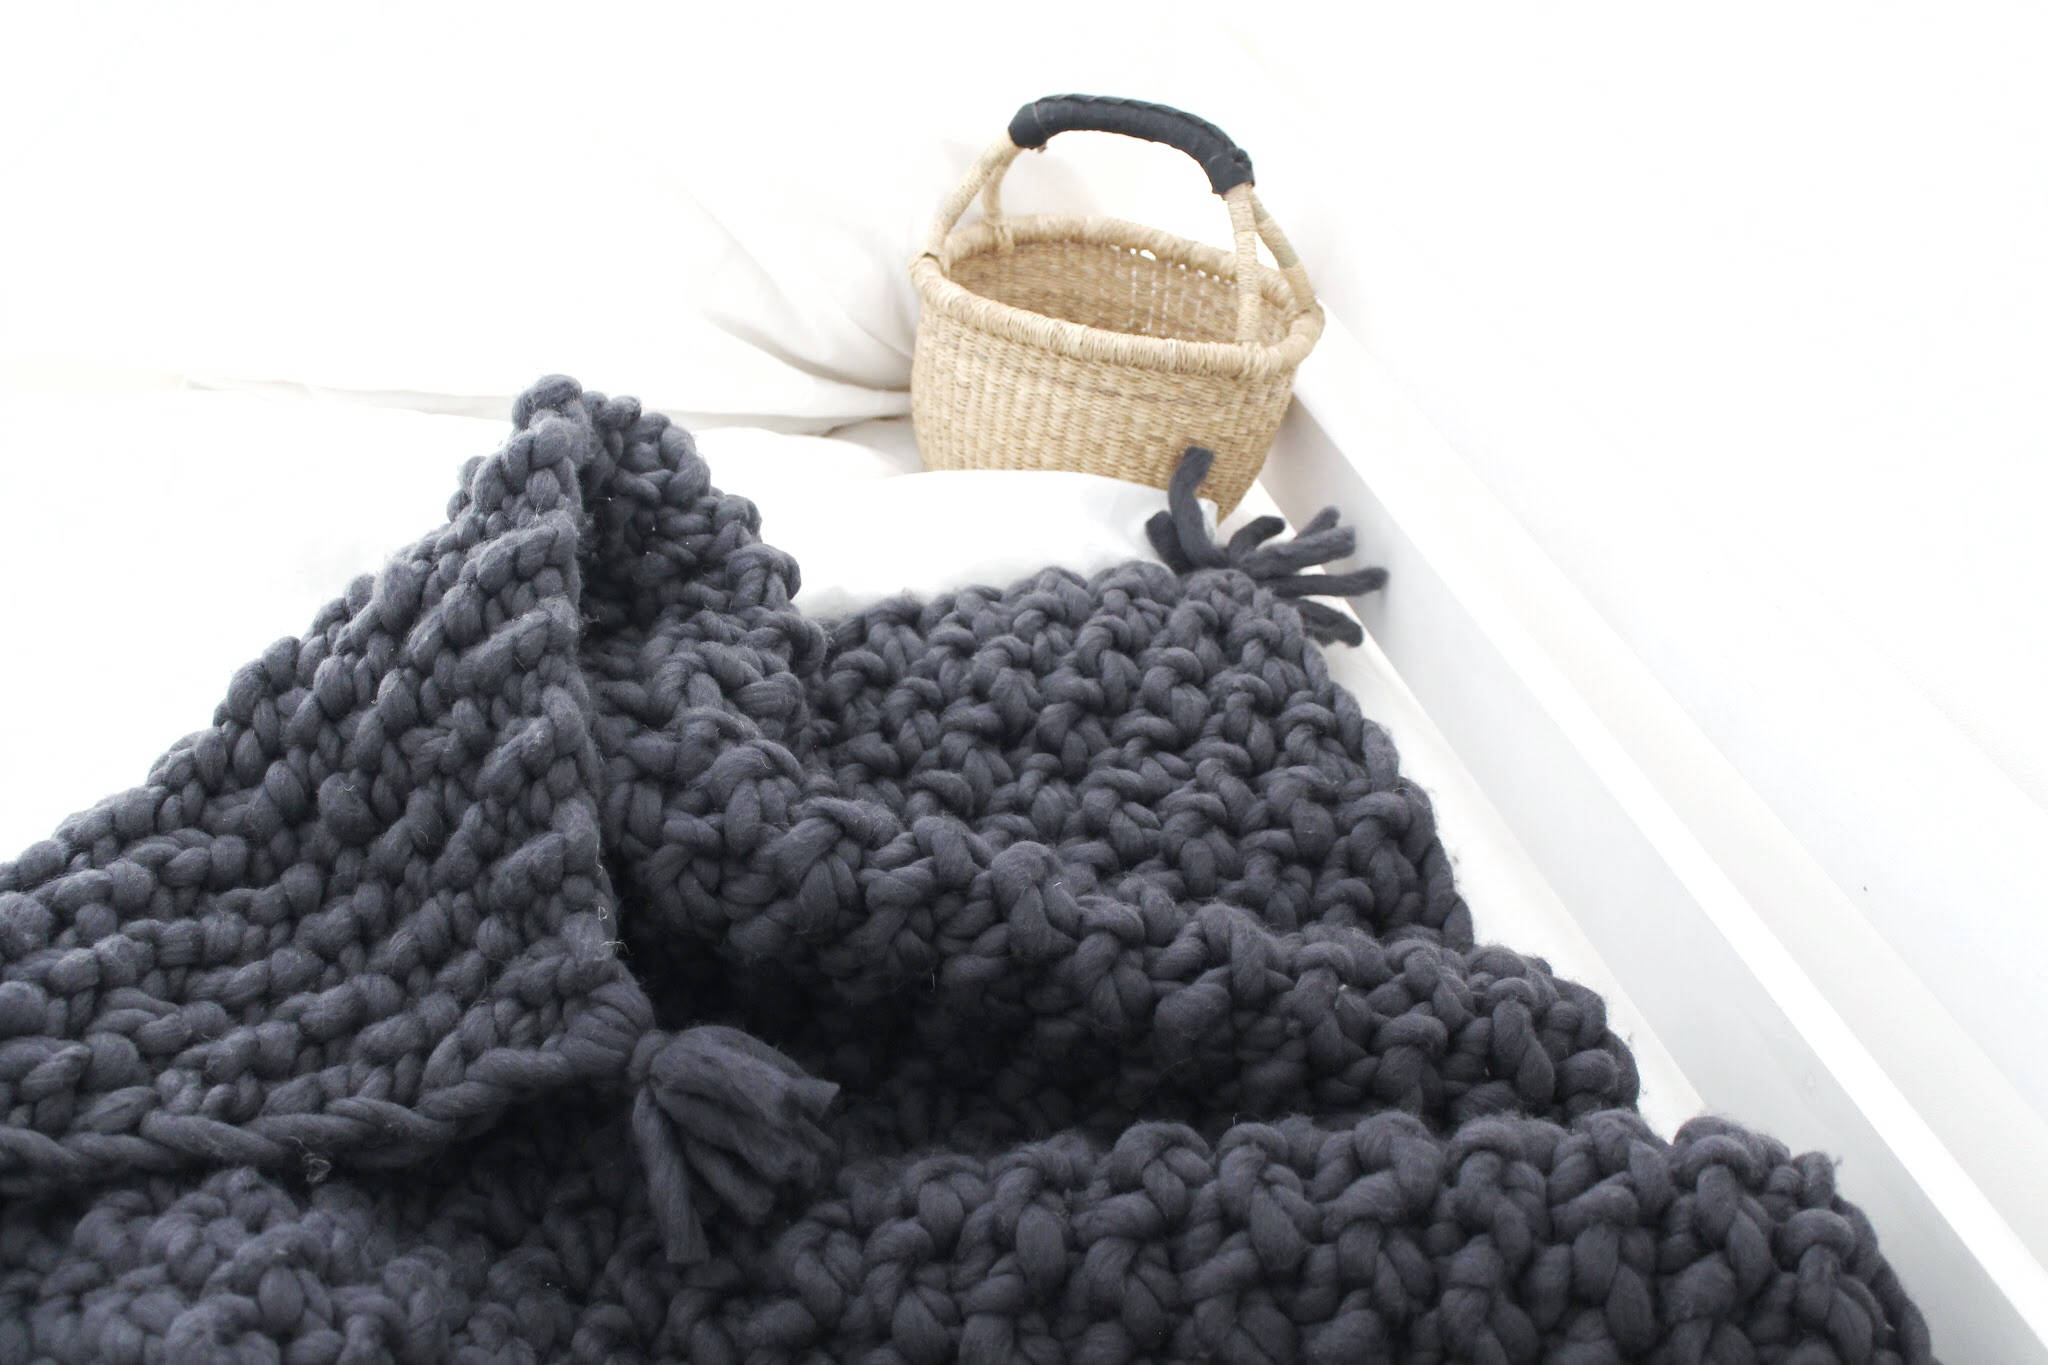 DIY KIT for Chunky Knit Blanket ,kit for Super Chunky Blanket, Knitting  Kit, Make Your Own Chunky Blanket, Chunky Blanket, KIT, Chunky Knits 